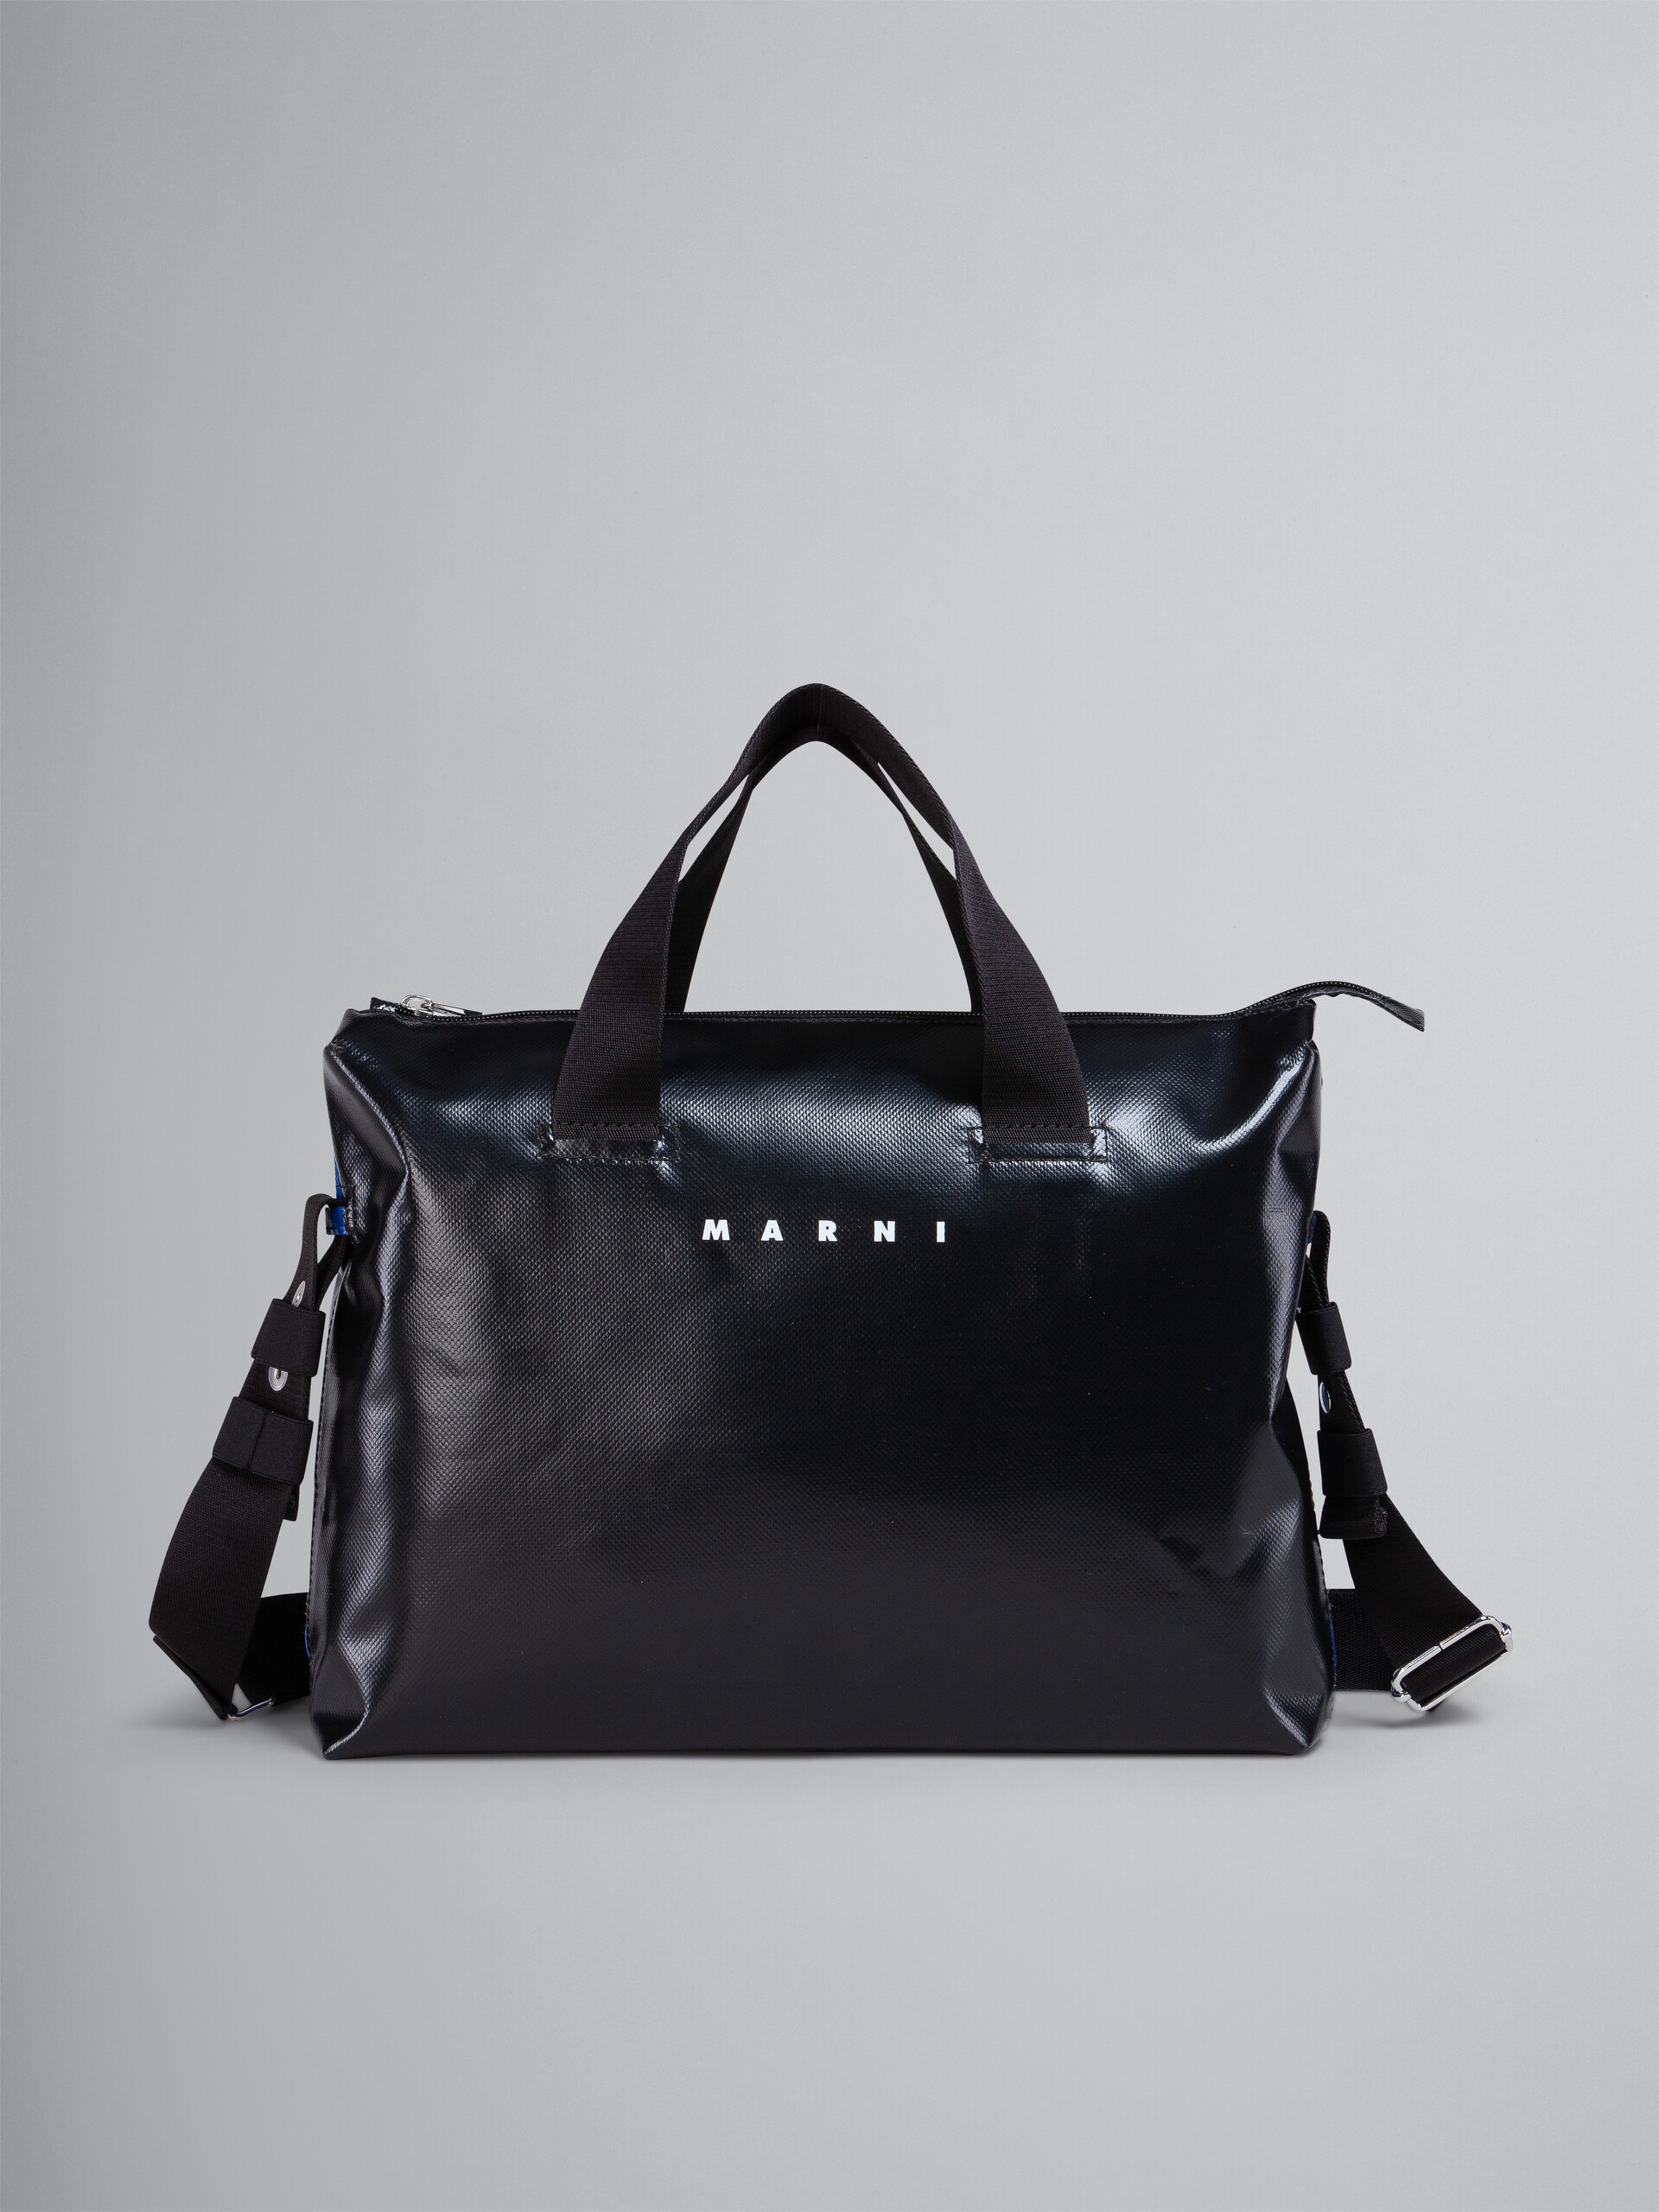 TRIBECA Tasche in Schwarz und Blau - Handtaschen - Image 1